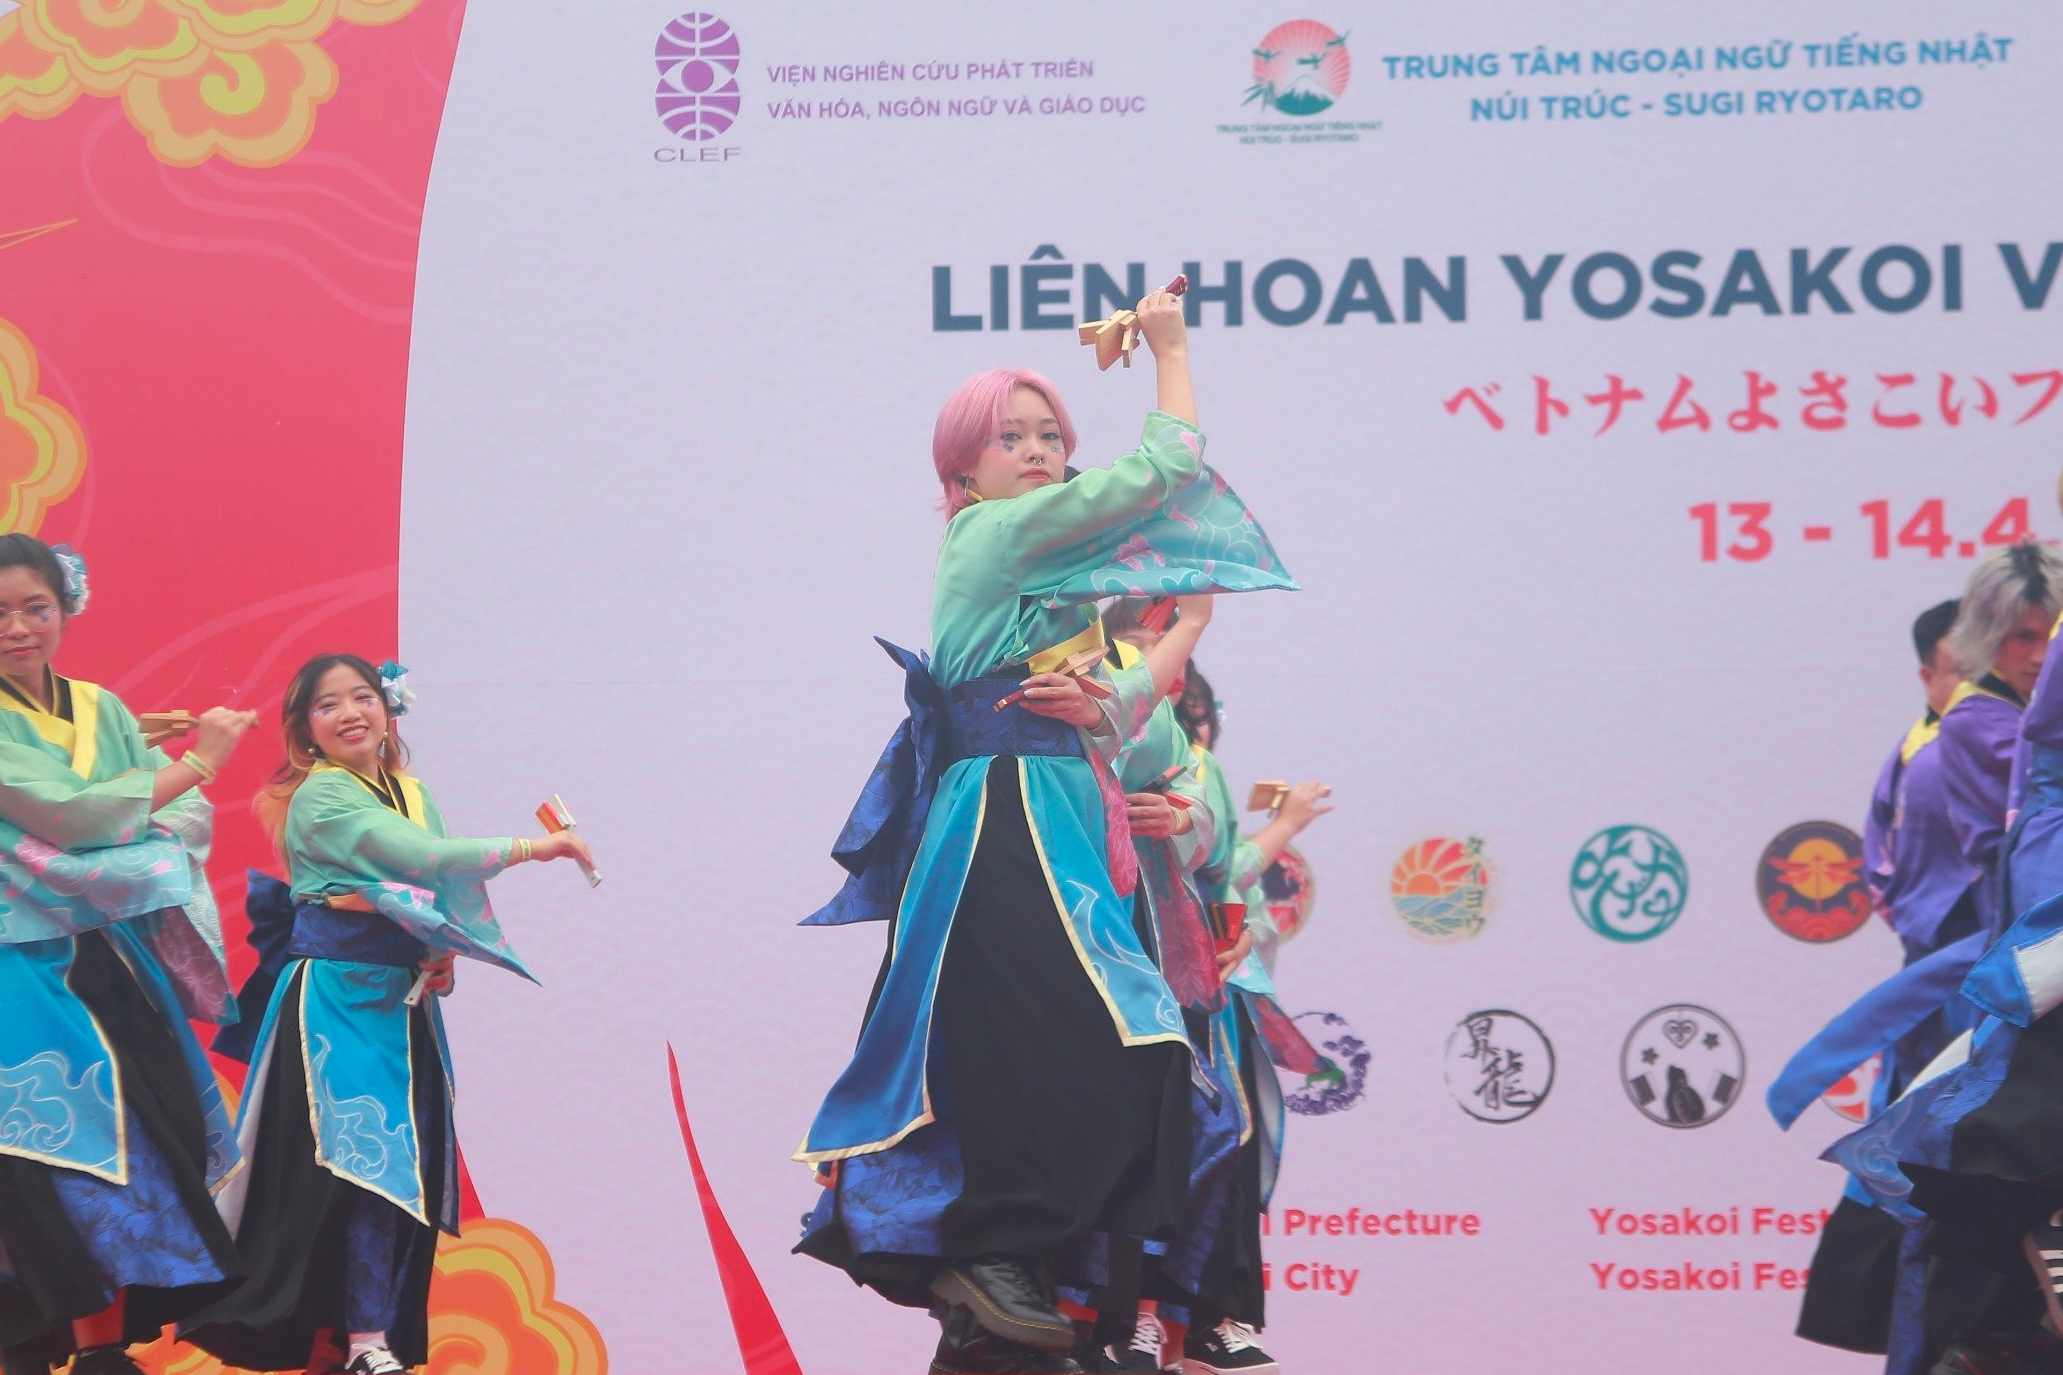 Hàng trăm vũ công trình diễn tại Liên hoan Yosakoi Việt Nam, mở màn Lễ hội Văn hóa Việt - Nhật. Ảnh: Thùy Trang